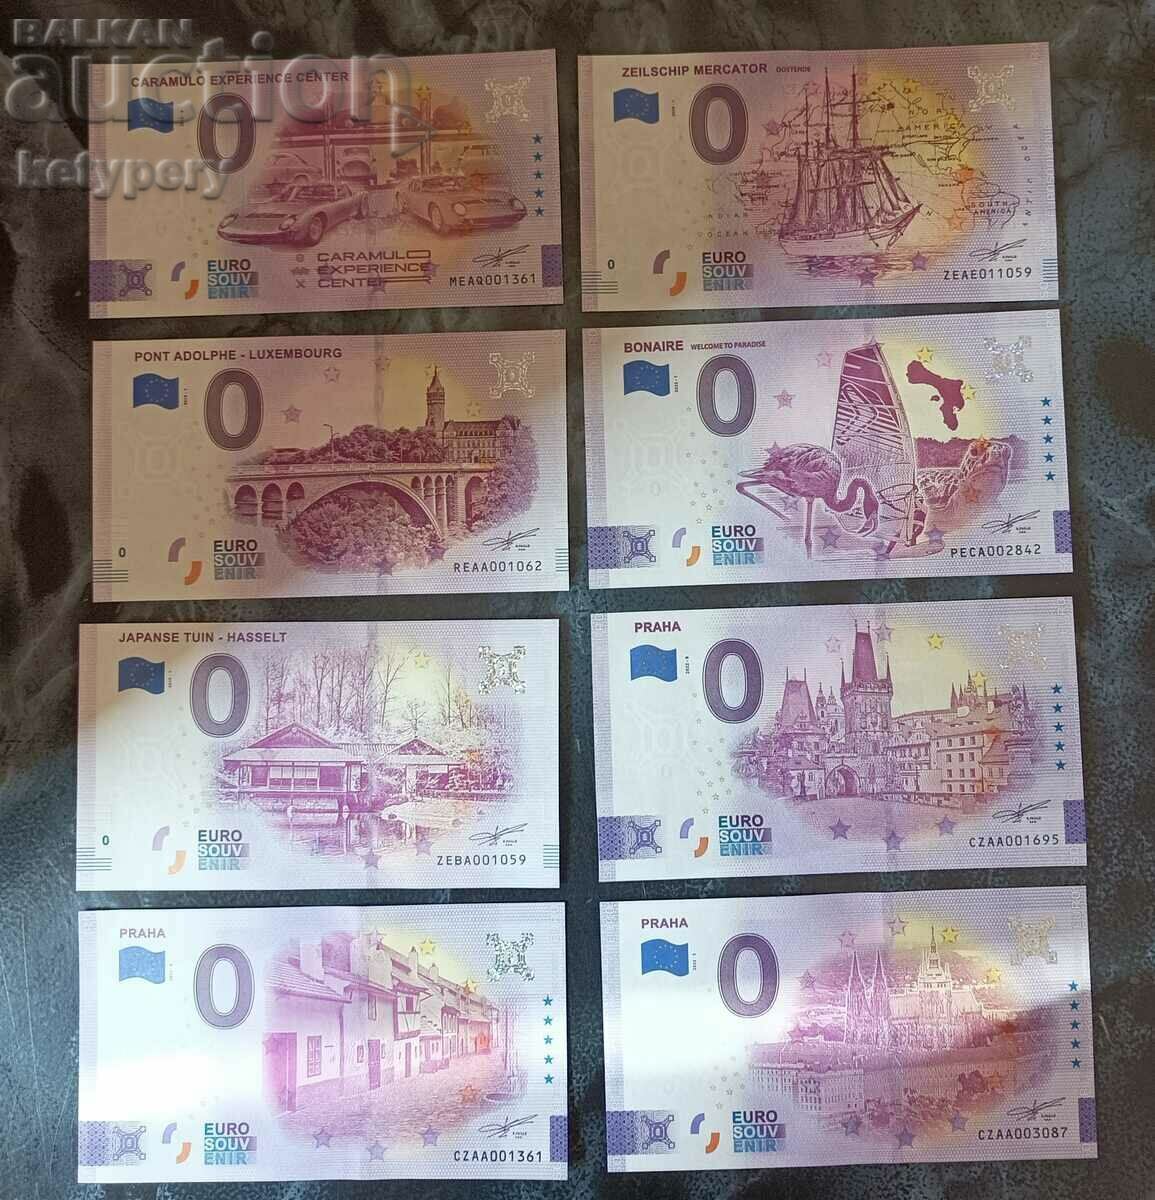 0 EURO SOUVENIR BANKNOTES